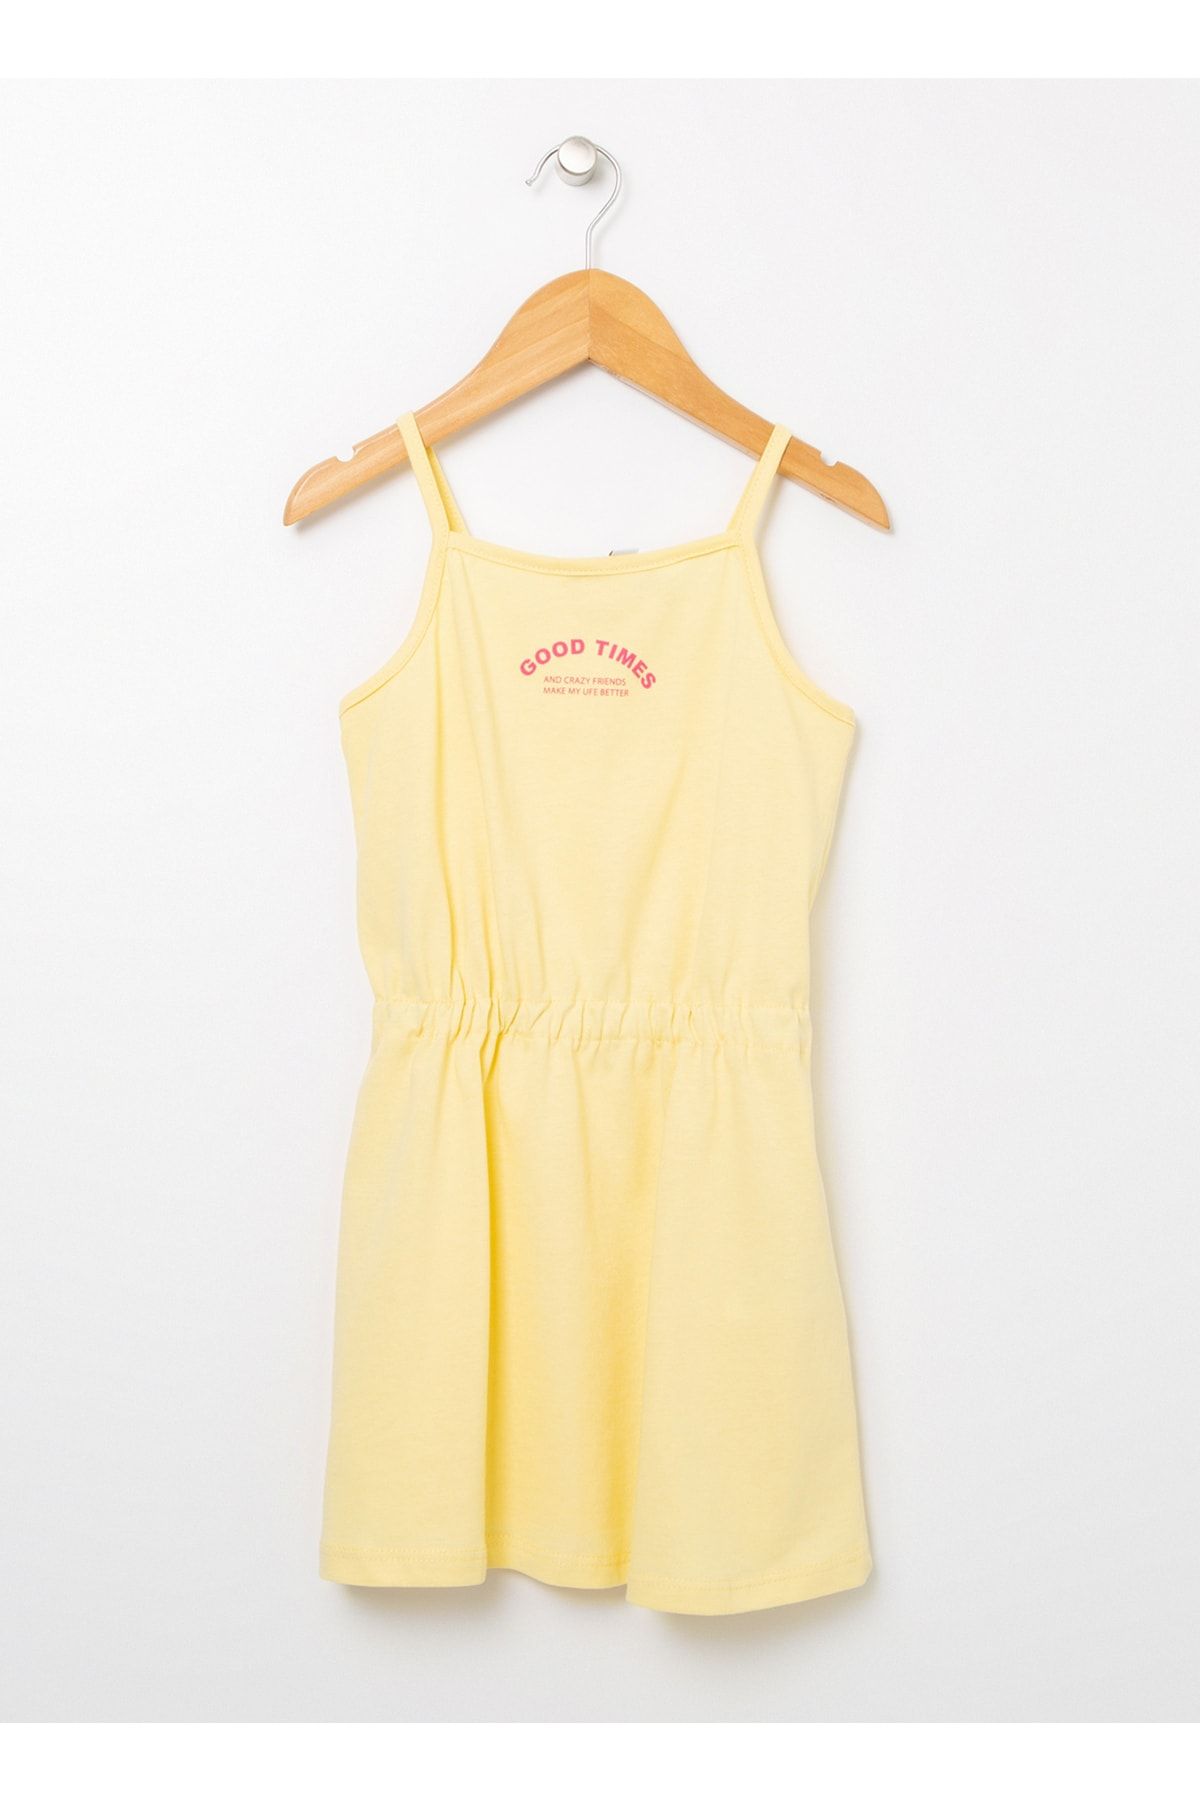 LİMON COMPANY Limon Crazy Gırl Sarı Düz Yaka Geniş Fit Kız Çocuk Elbise